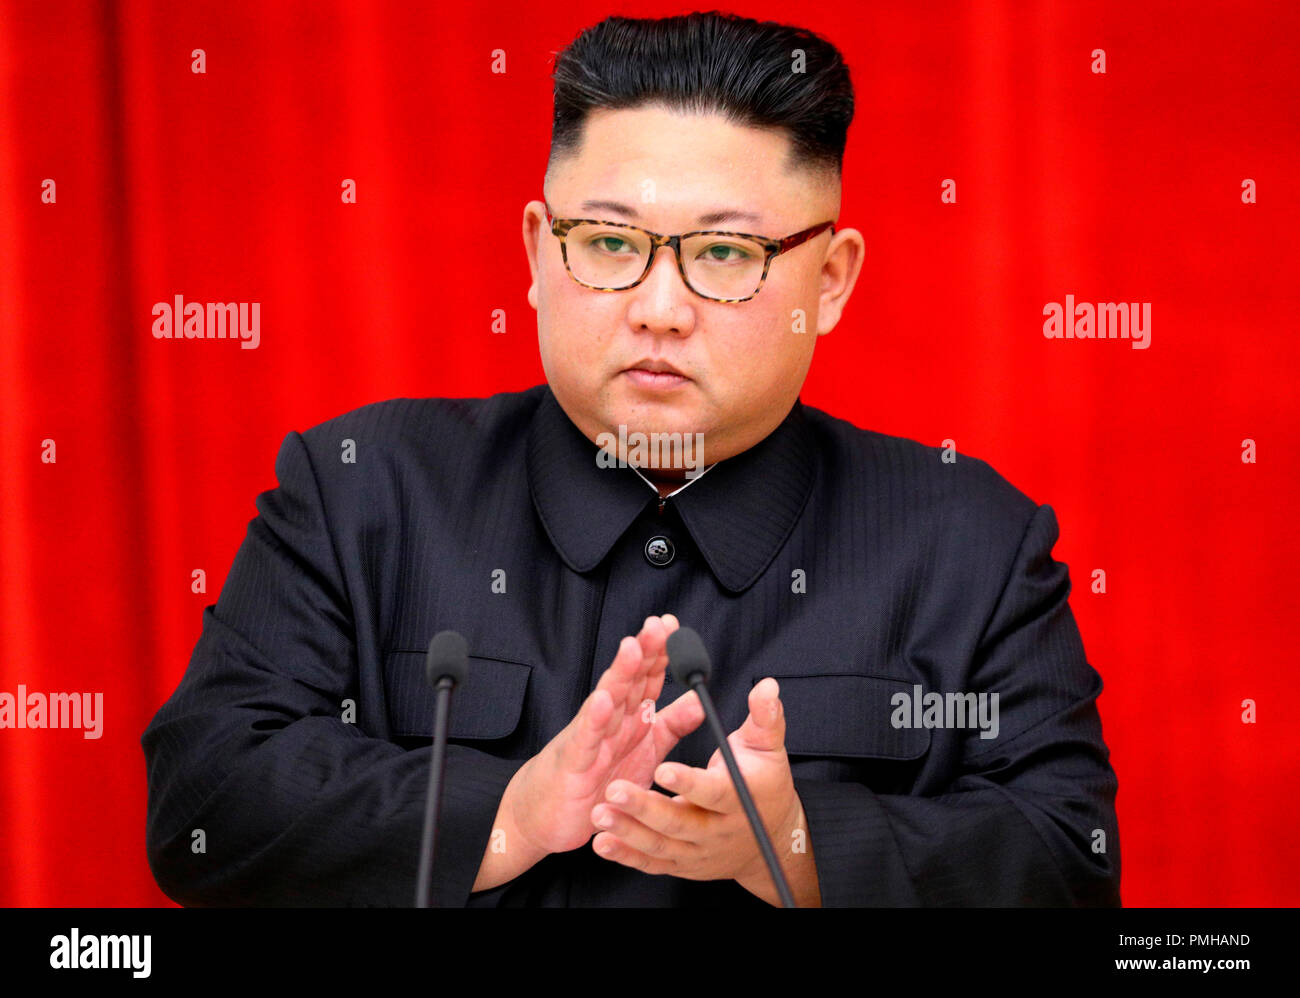 Sommet intercoréen, Sep 18, 2018 : le dirigeant nord-coréen Kim Jong-Un parle au cours d'un dîner officiel pour visiter le président sud-coréen Moon Jae-In au Magnolia House à Pyongyang, la Corée du Nord. Utilisez uniquement rédactionnel (photo de Pyeongyang Corps Presse/Piscine/AFLO) (CORÉE DU NORD) Banque D'Images